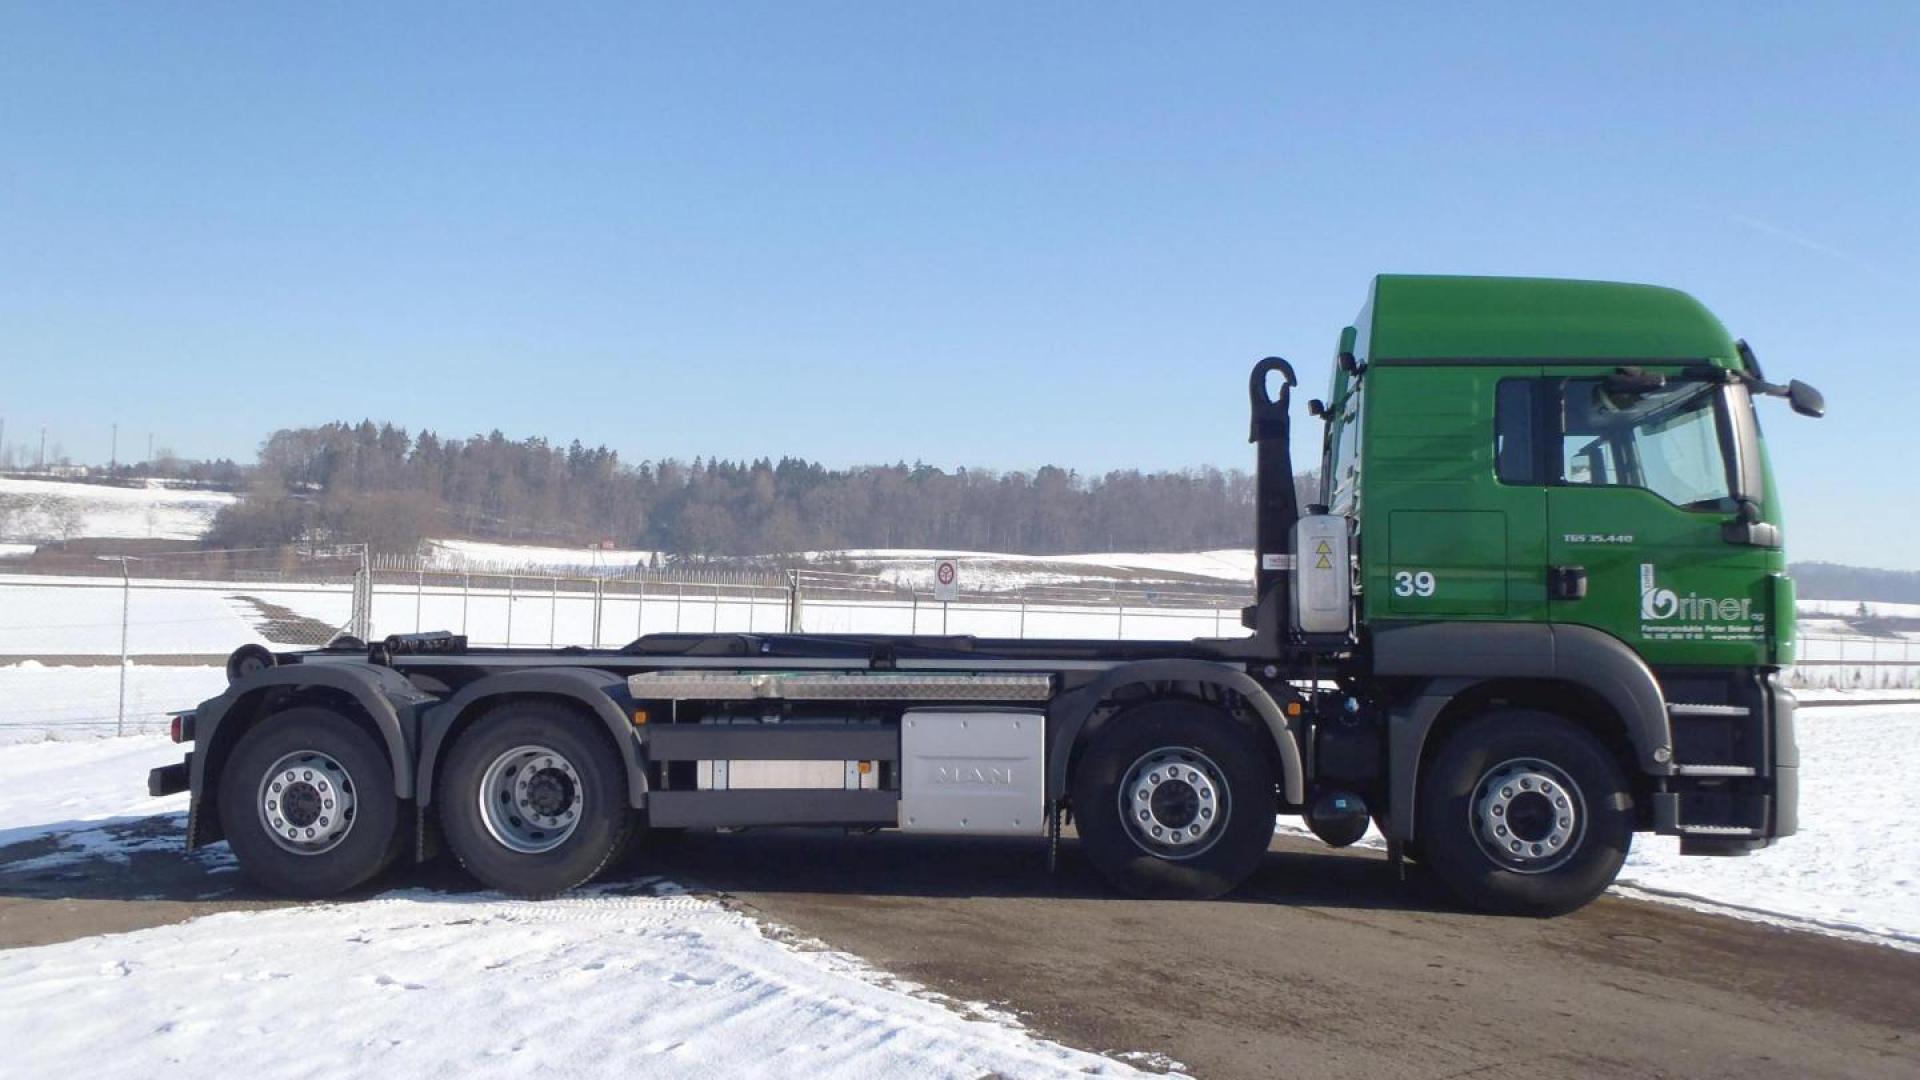 VDL hooklift delivered in Switserland by Trösch